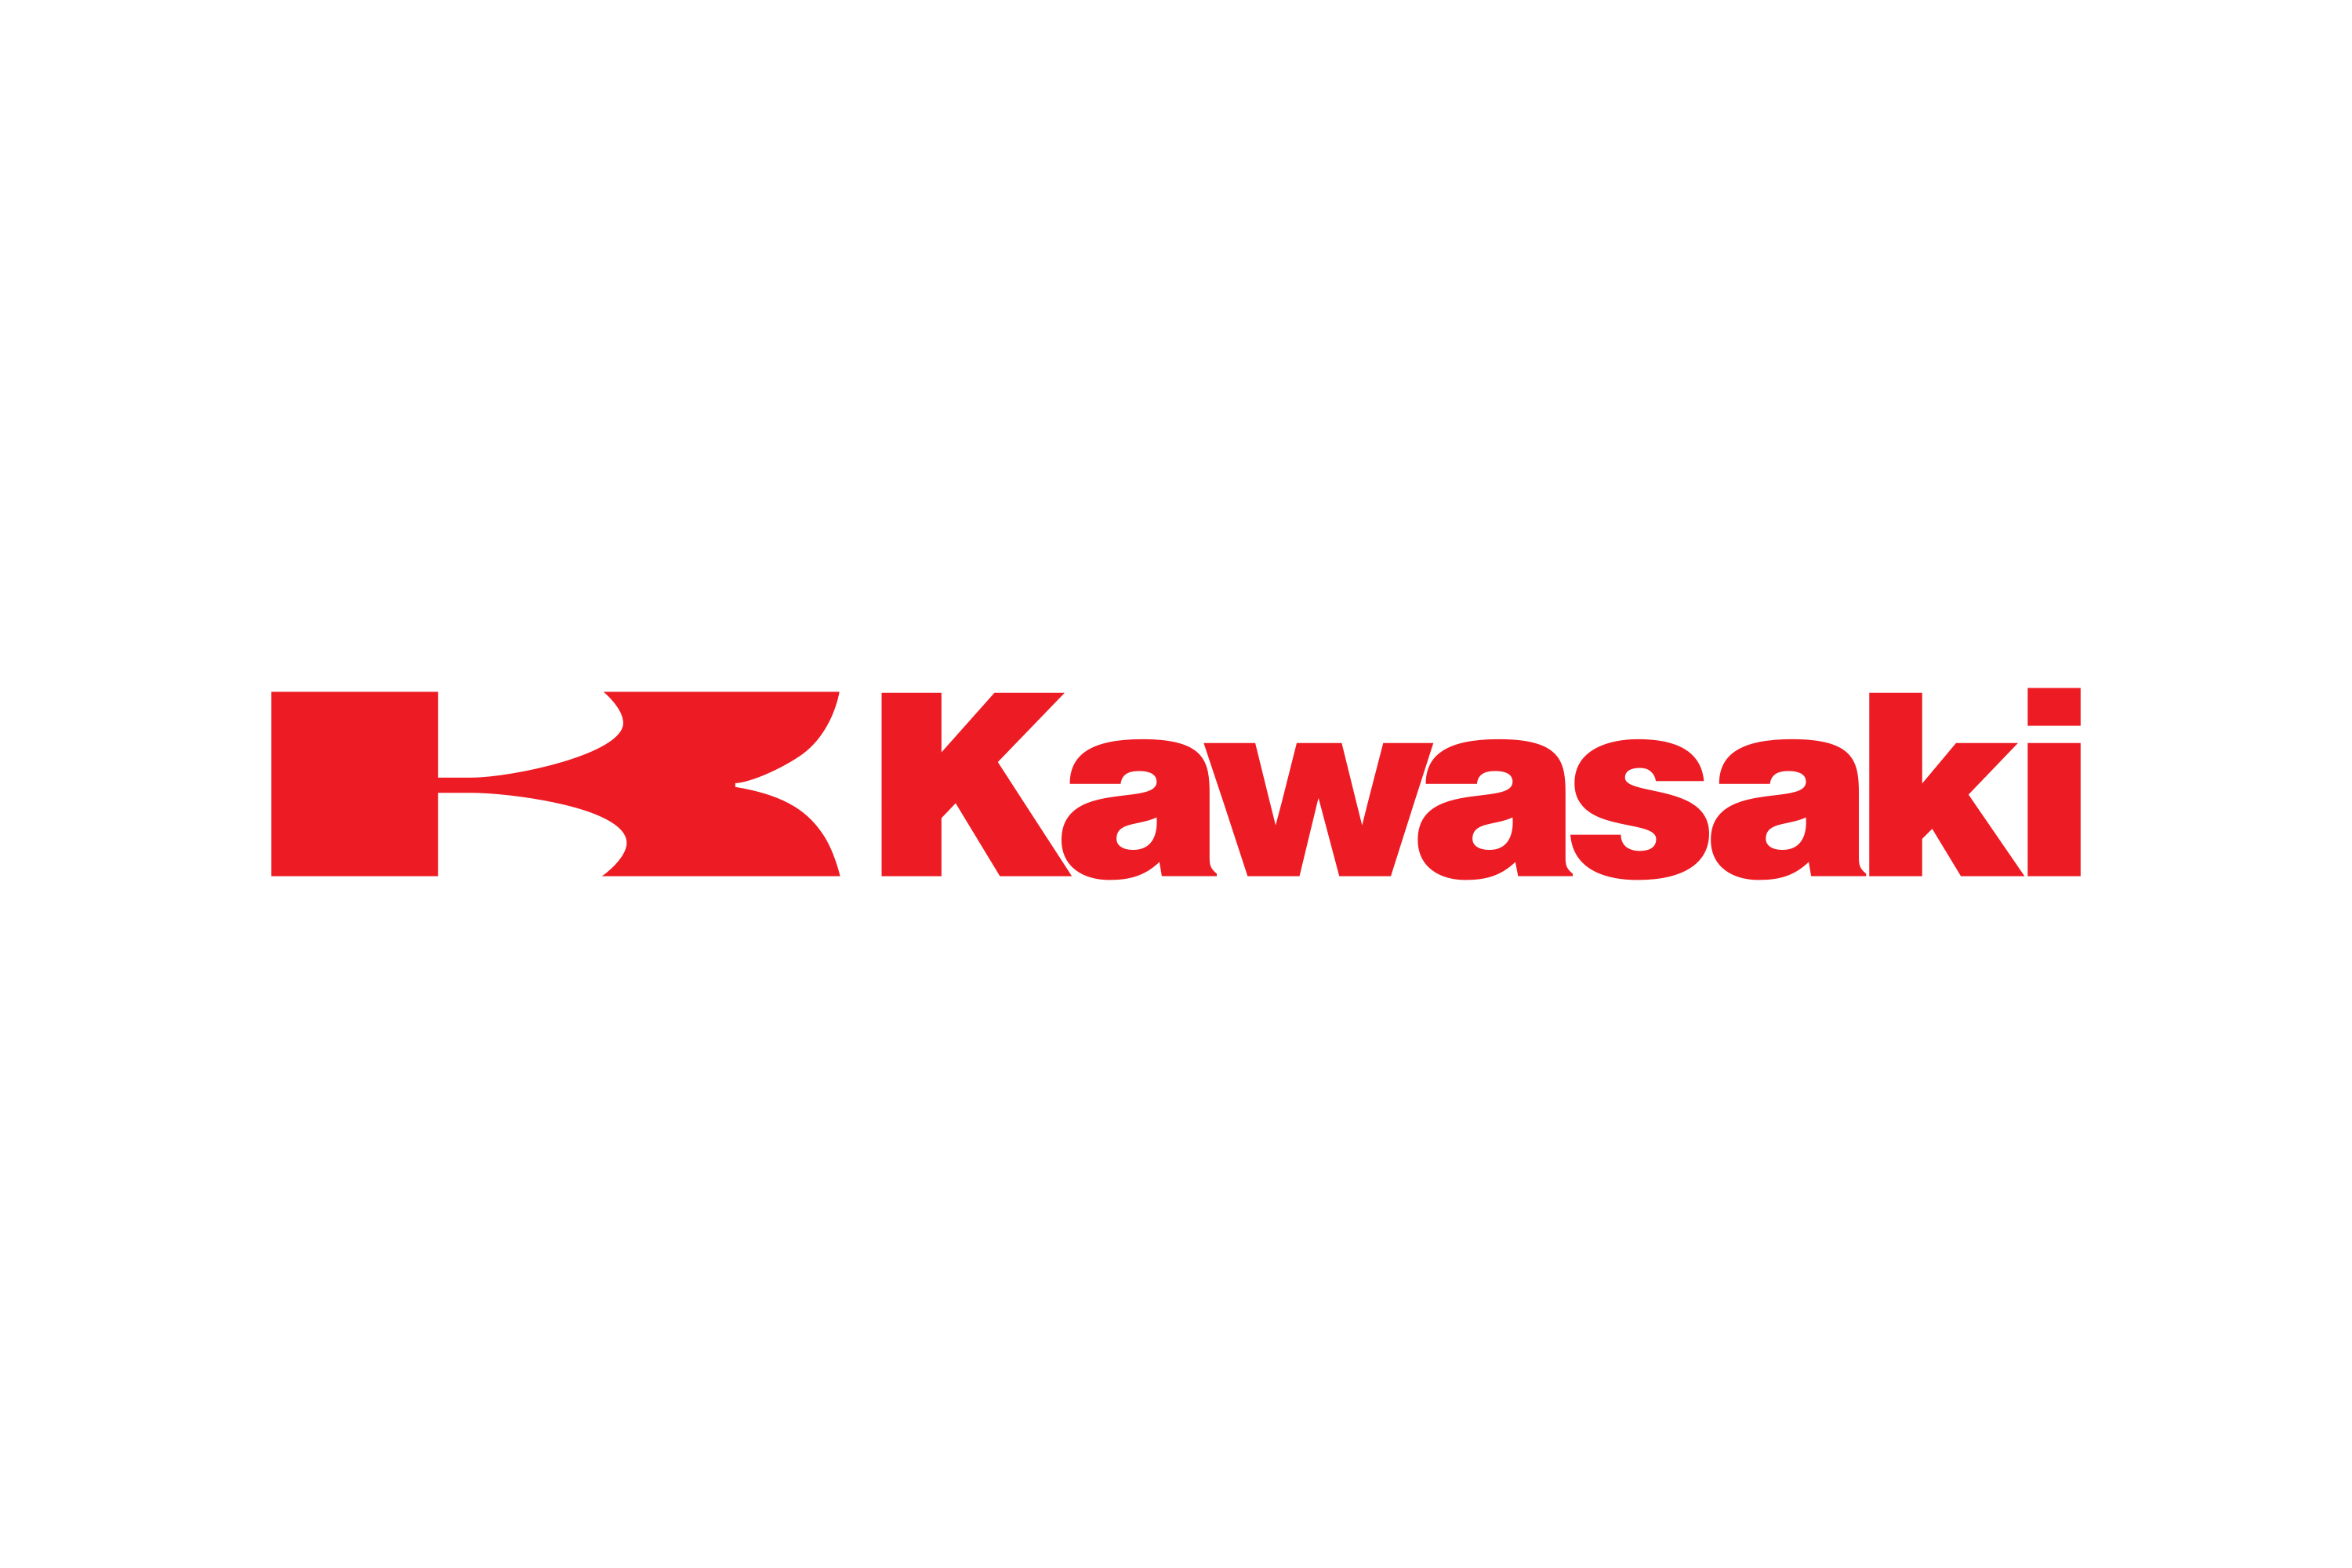 Kawasaki logo - Stock Illustration [64035172] - PIXTA